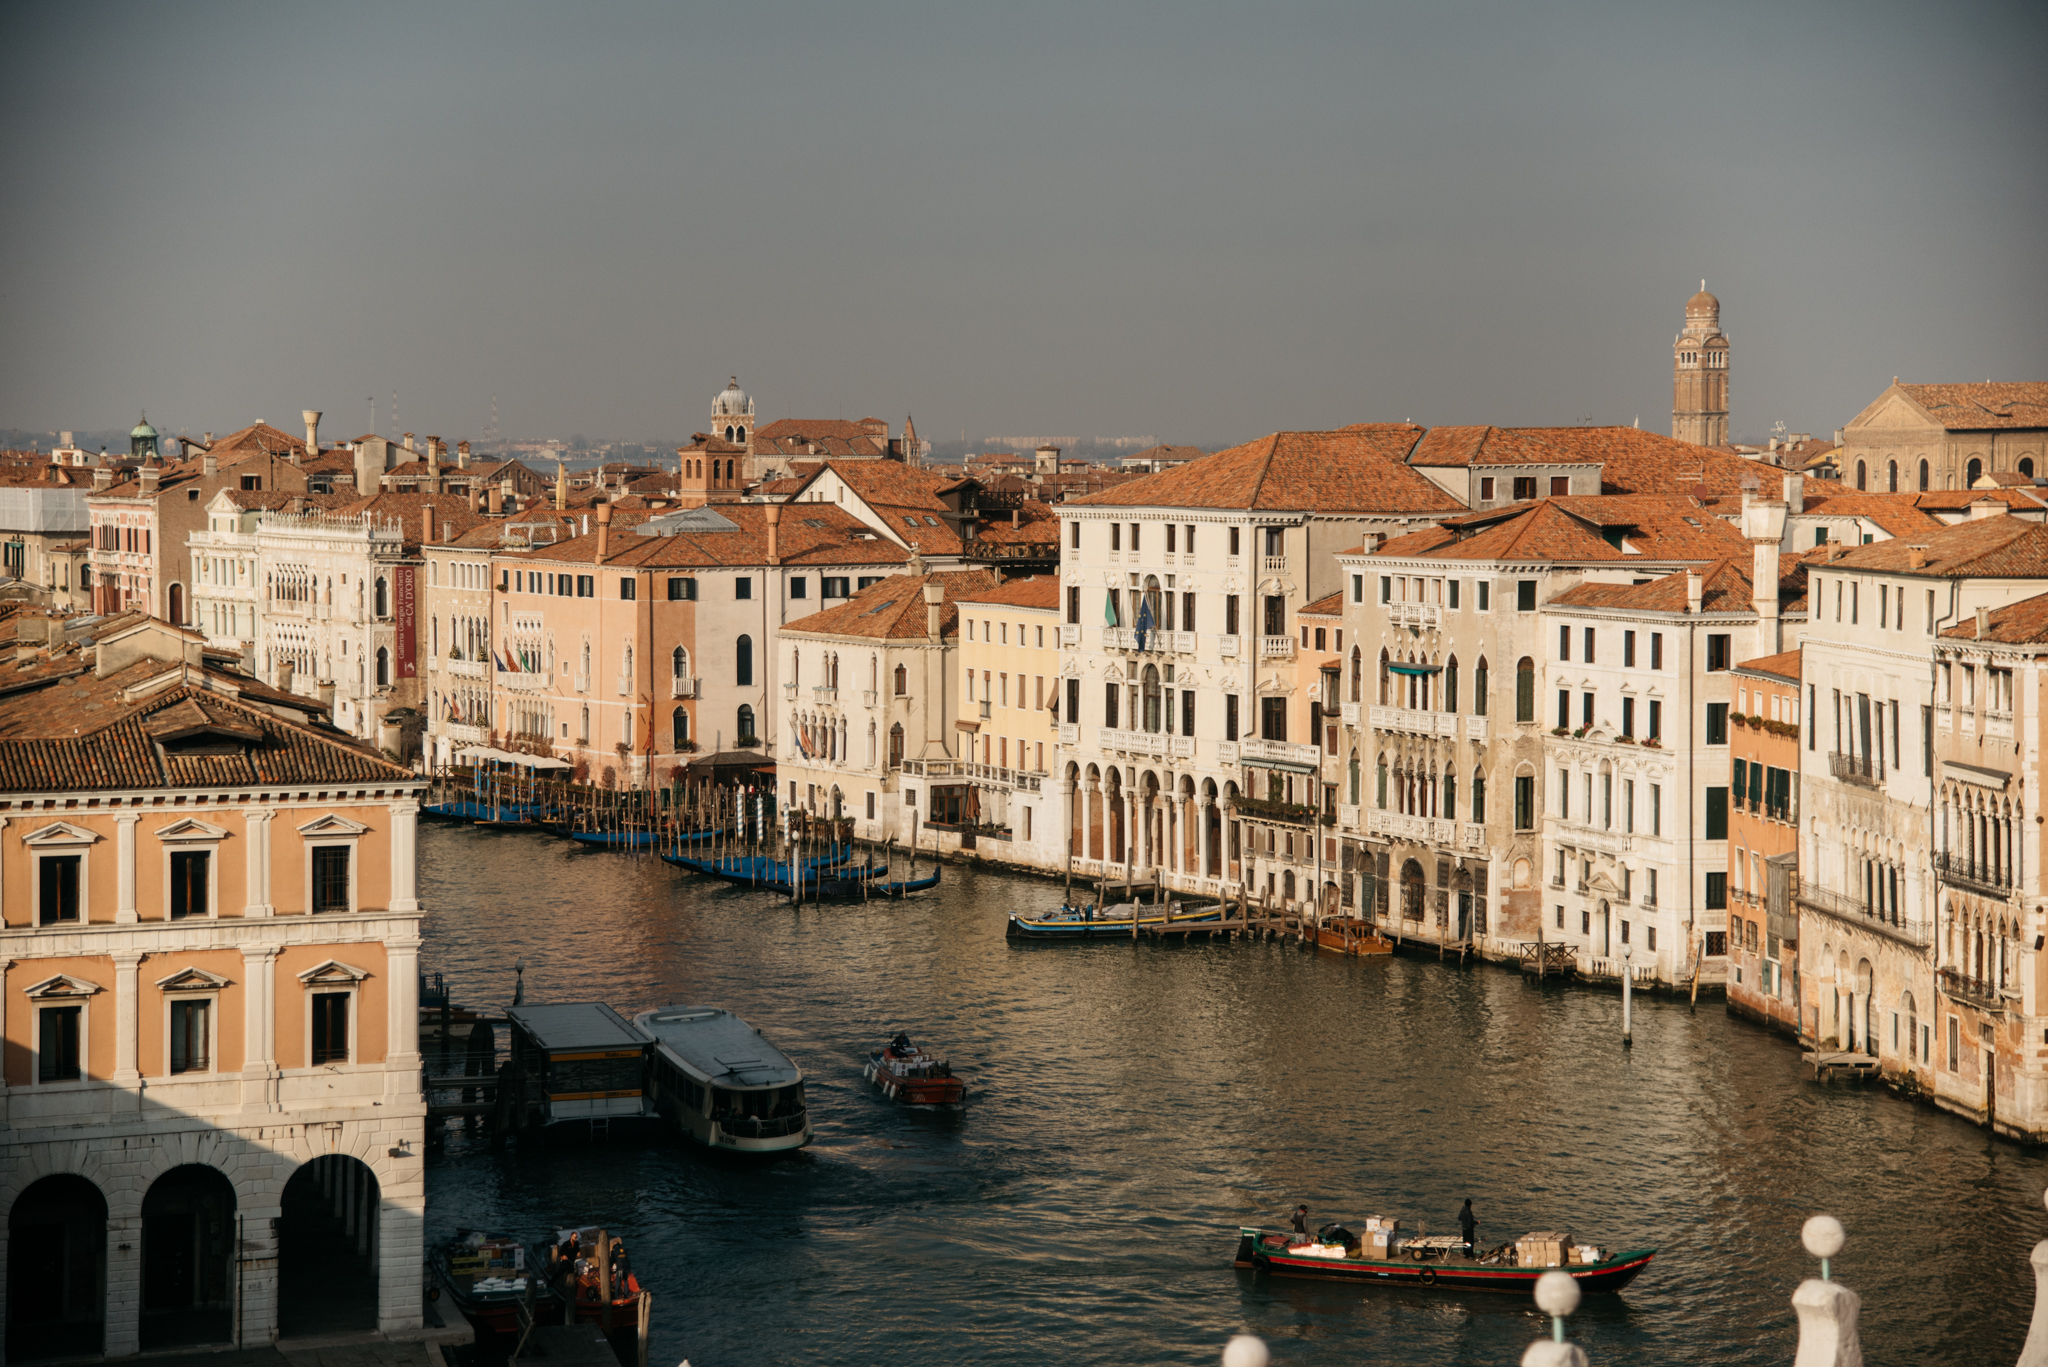 Venice from Fontego dei Tedeschi